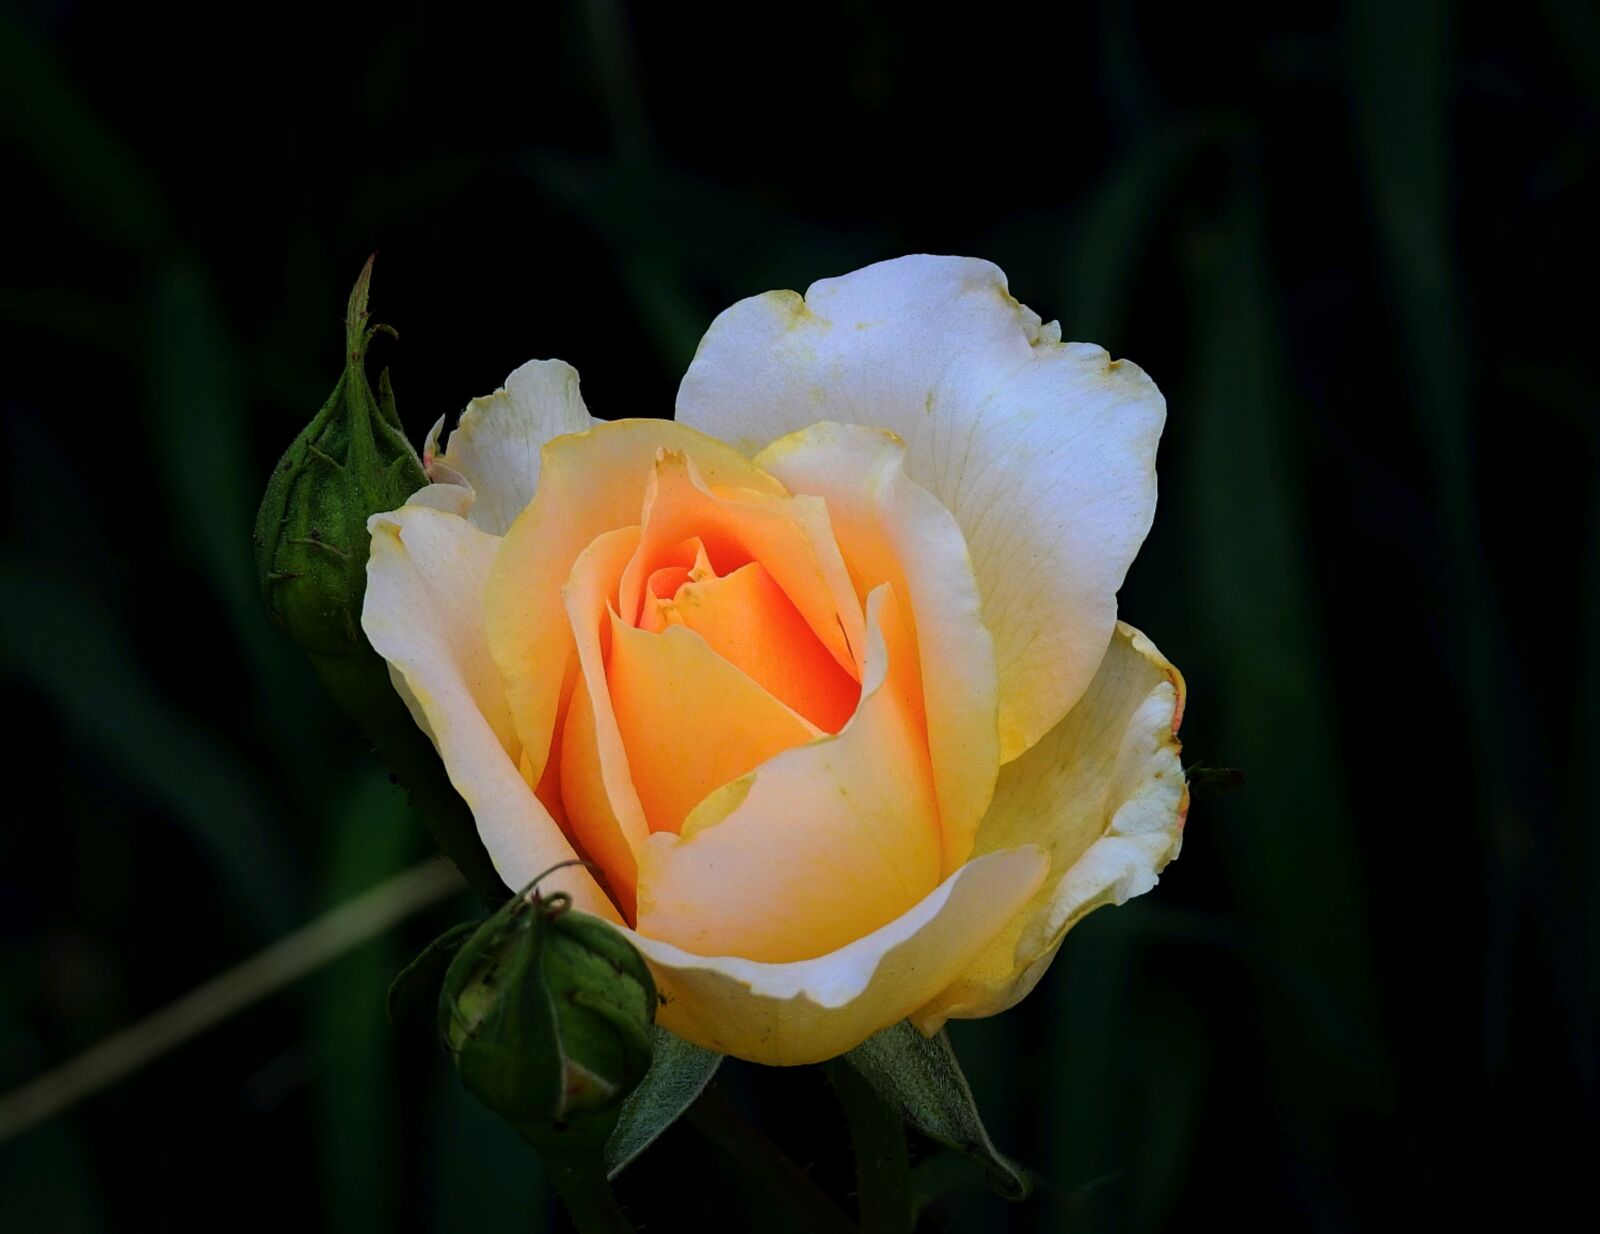 Nikon Coolpix P900 sample photo. Rose, nature, garden photography